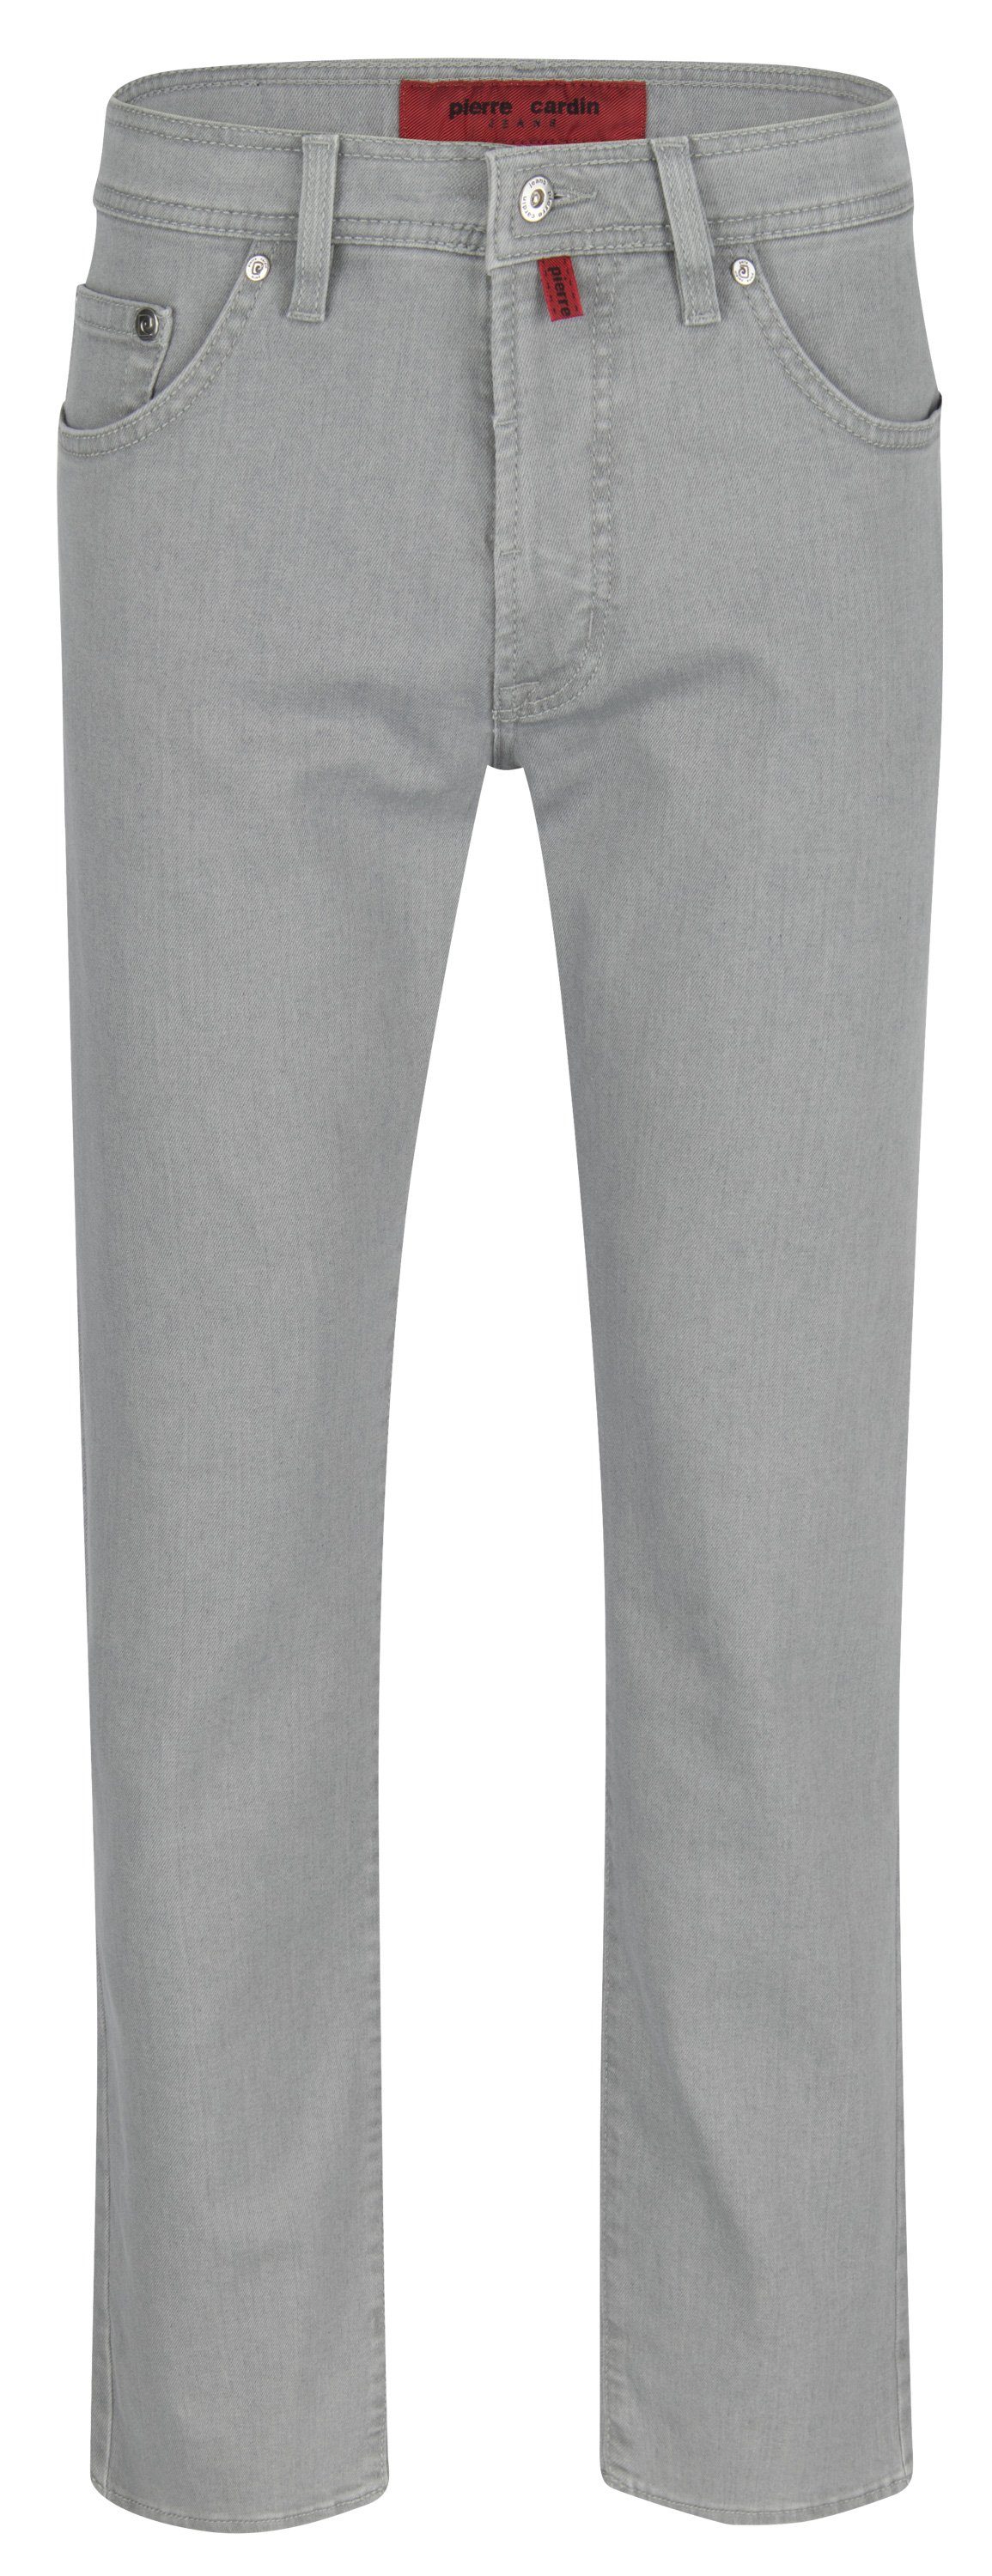 Pierre Cardin 5-Pocket-Jeans PIERRE CARDIN DEAUVILLE light grey 3196 866.25 - DENIM EDITION